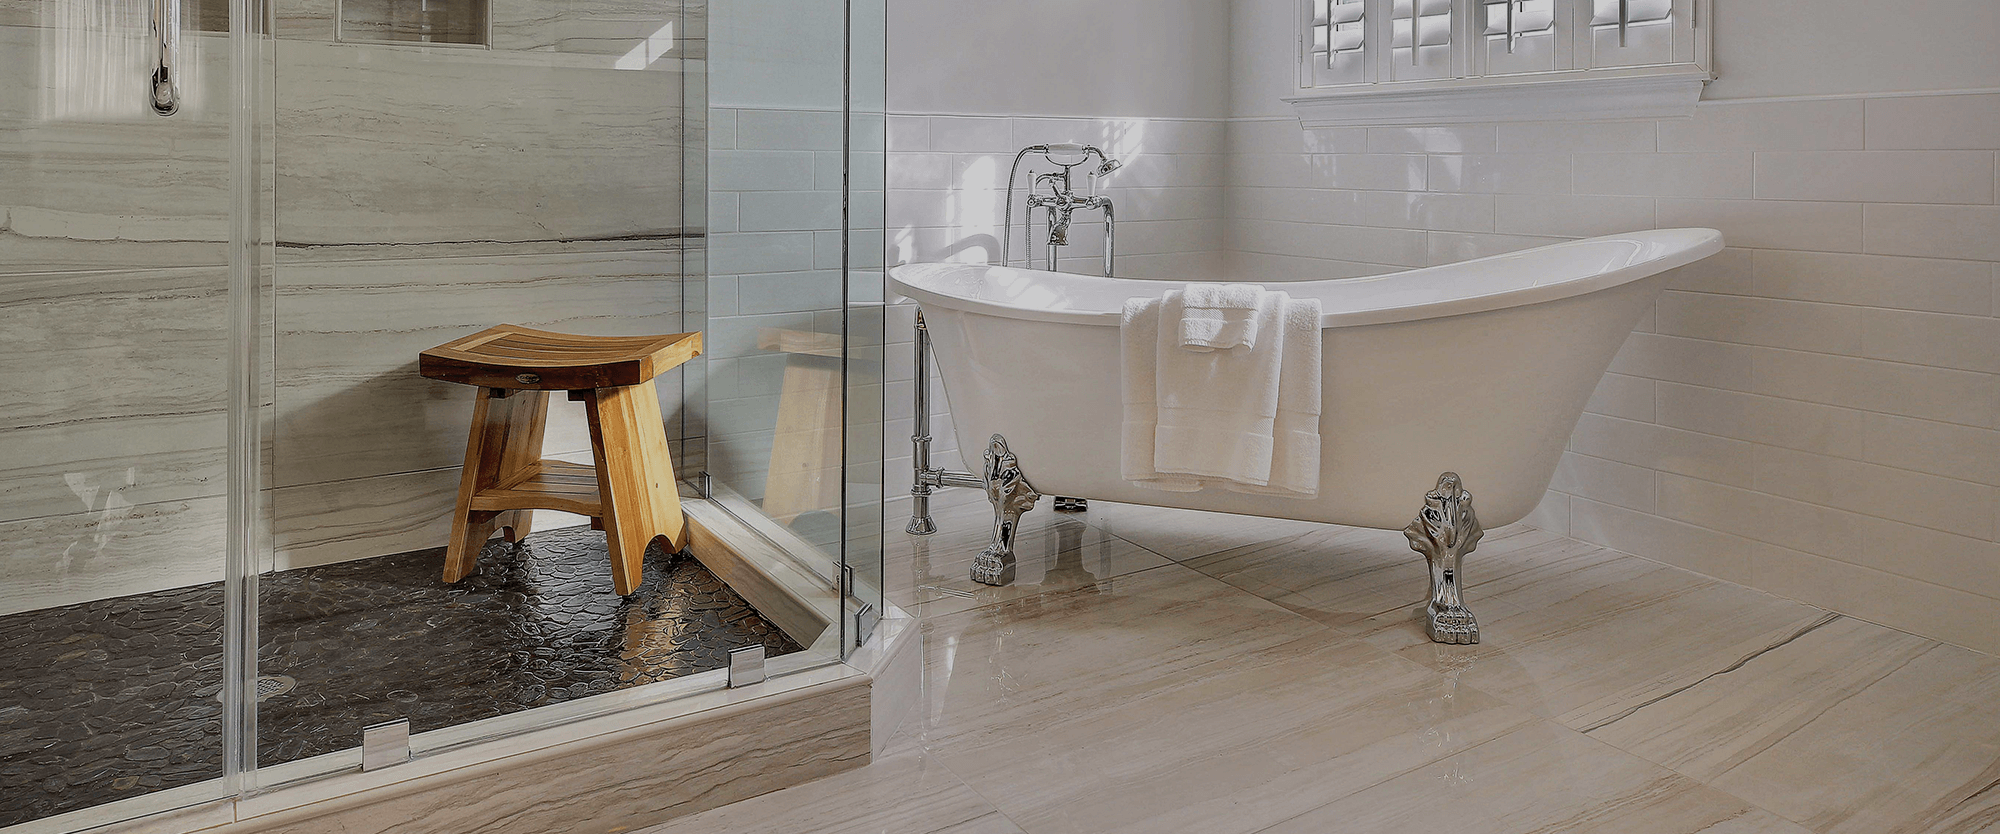 Bathroom Remodel with clawfoot tub